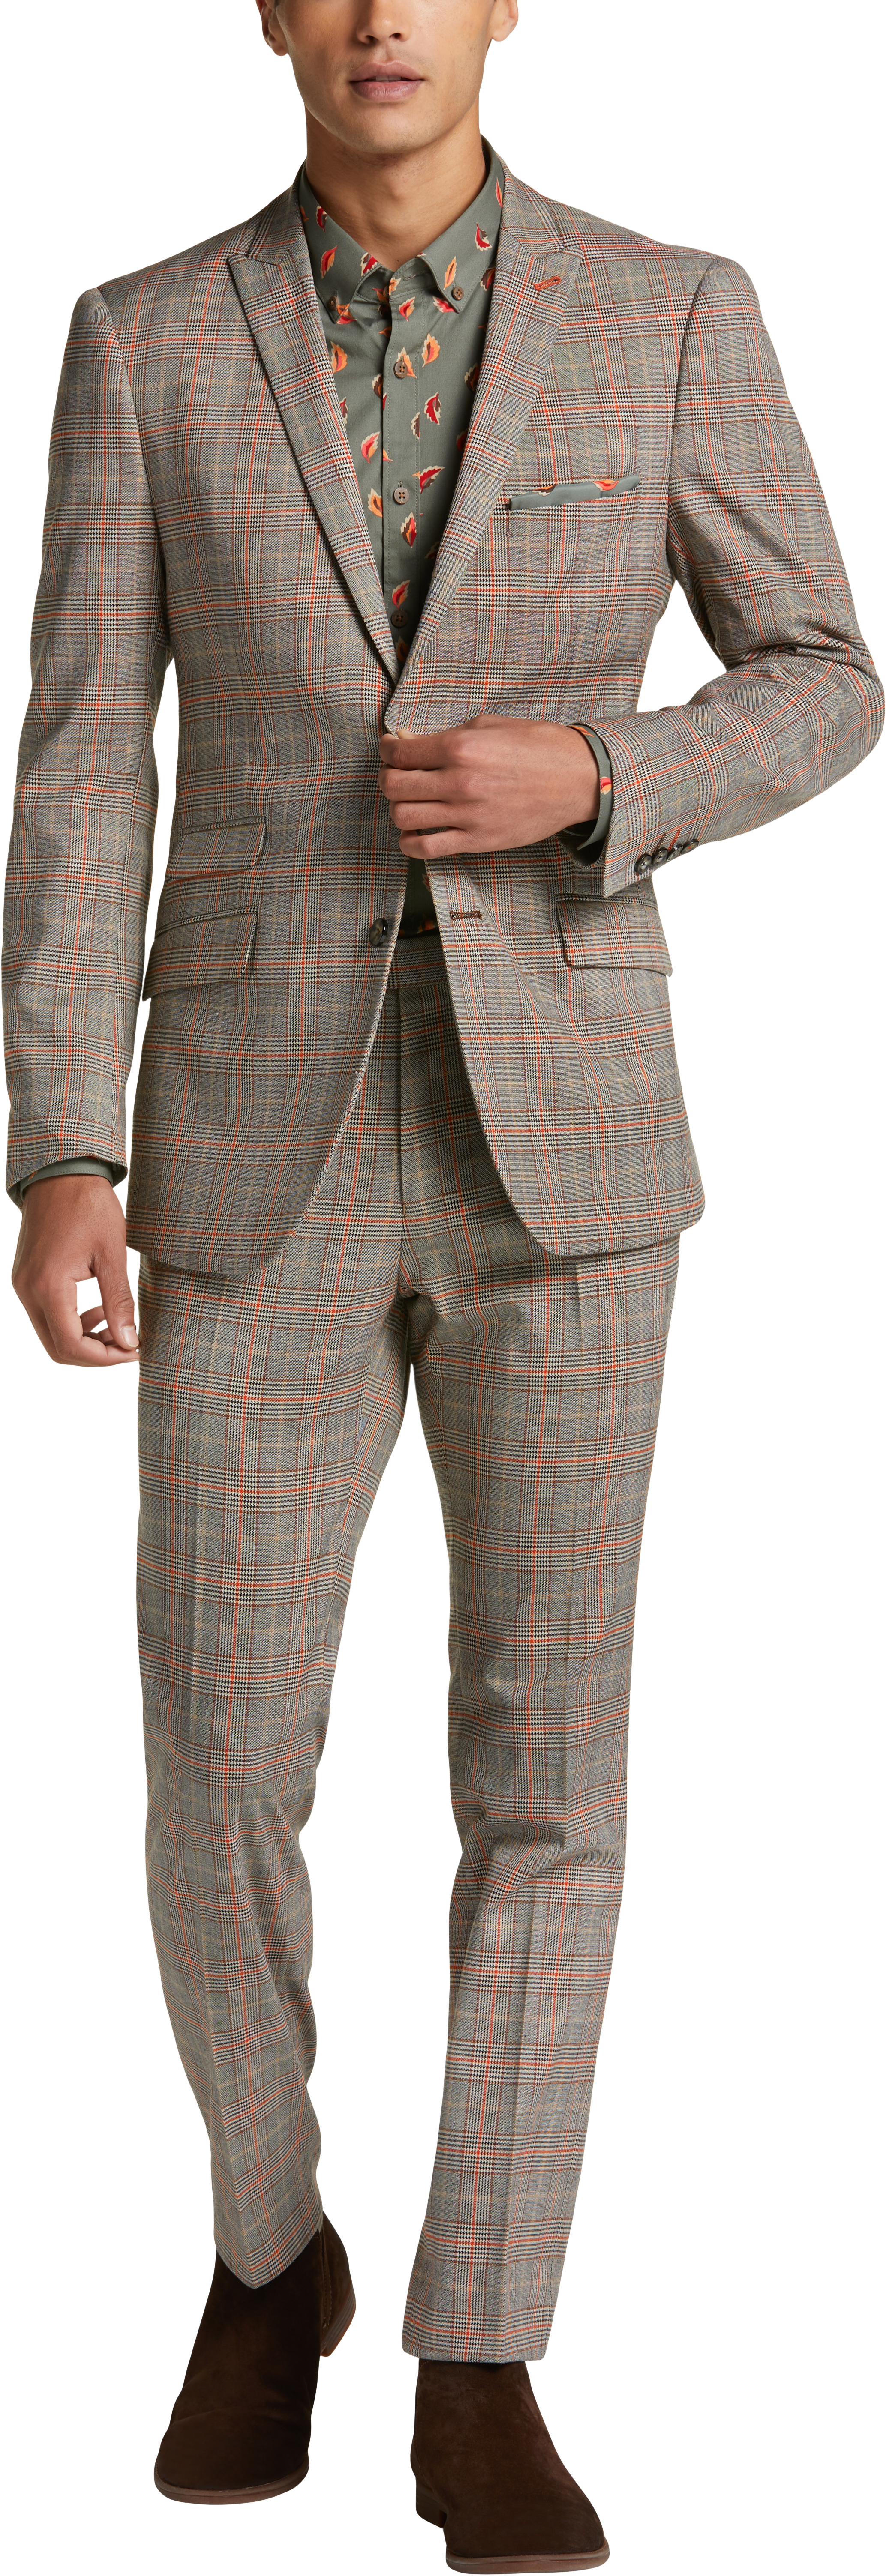 Paisley & Gray Slim Fit Suit Separates Coat, Tan Plaid - Men's Sale ...